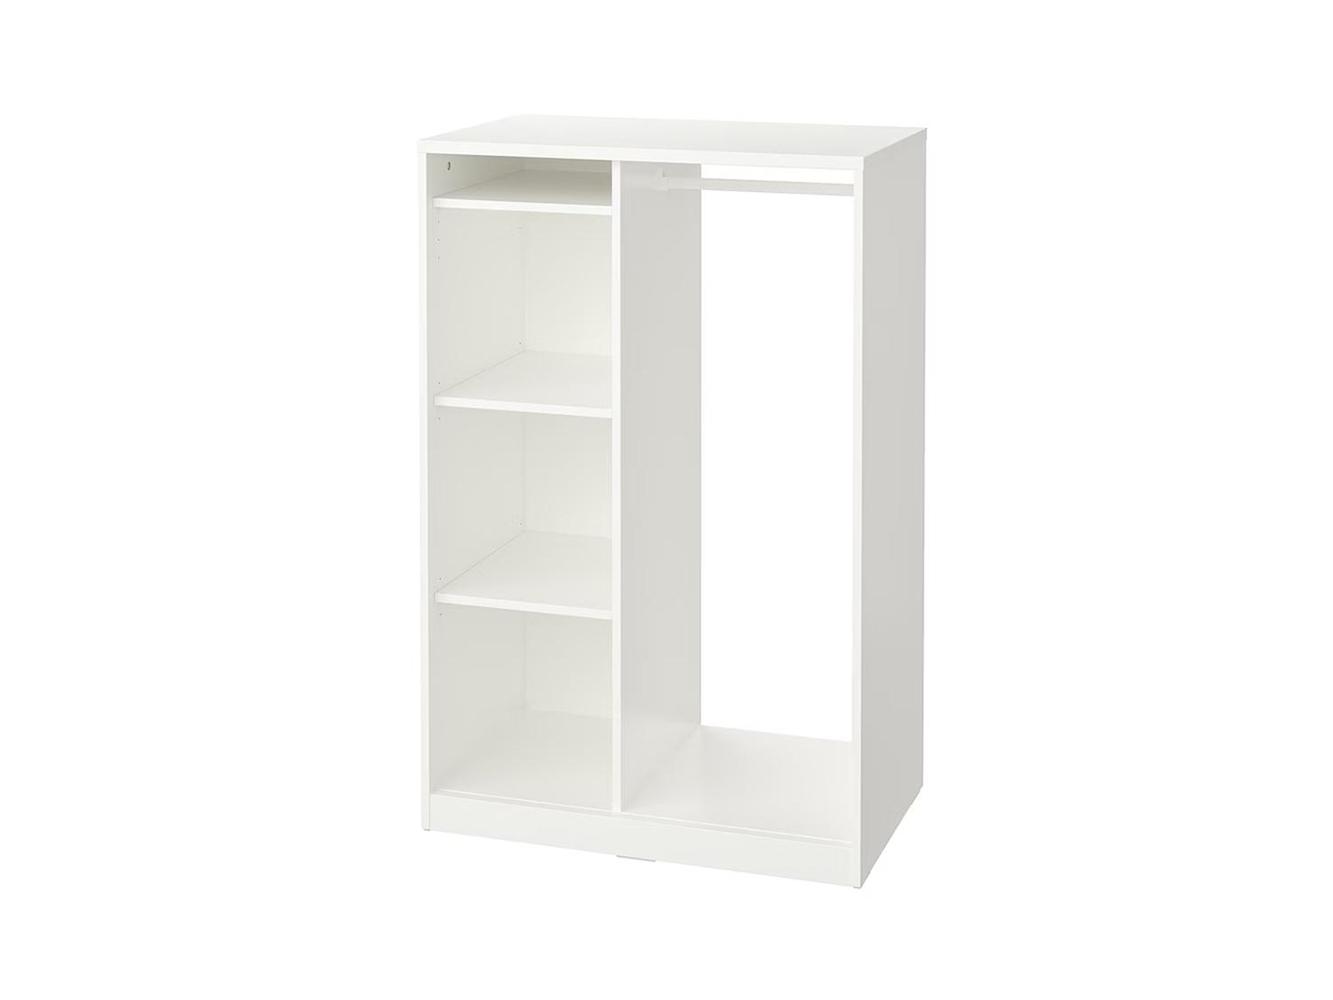 Открытый гардеробный шкаф Сувде 13 ИКЕА (IKEA) изображение товара